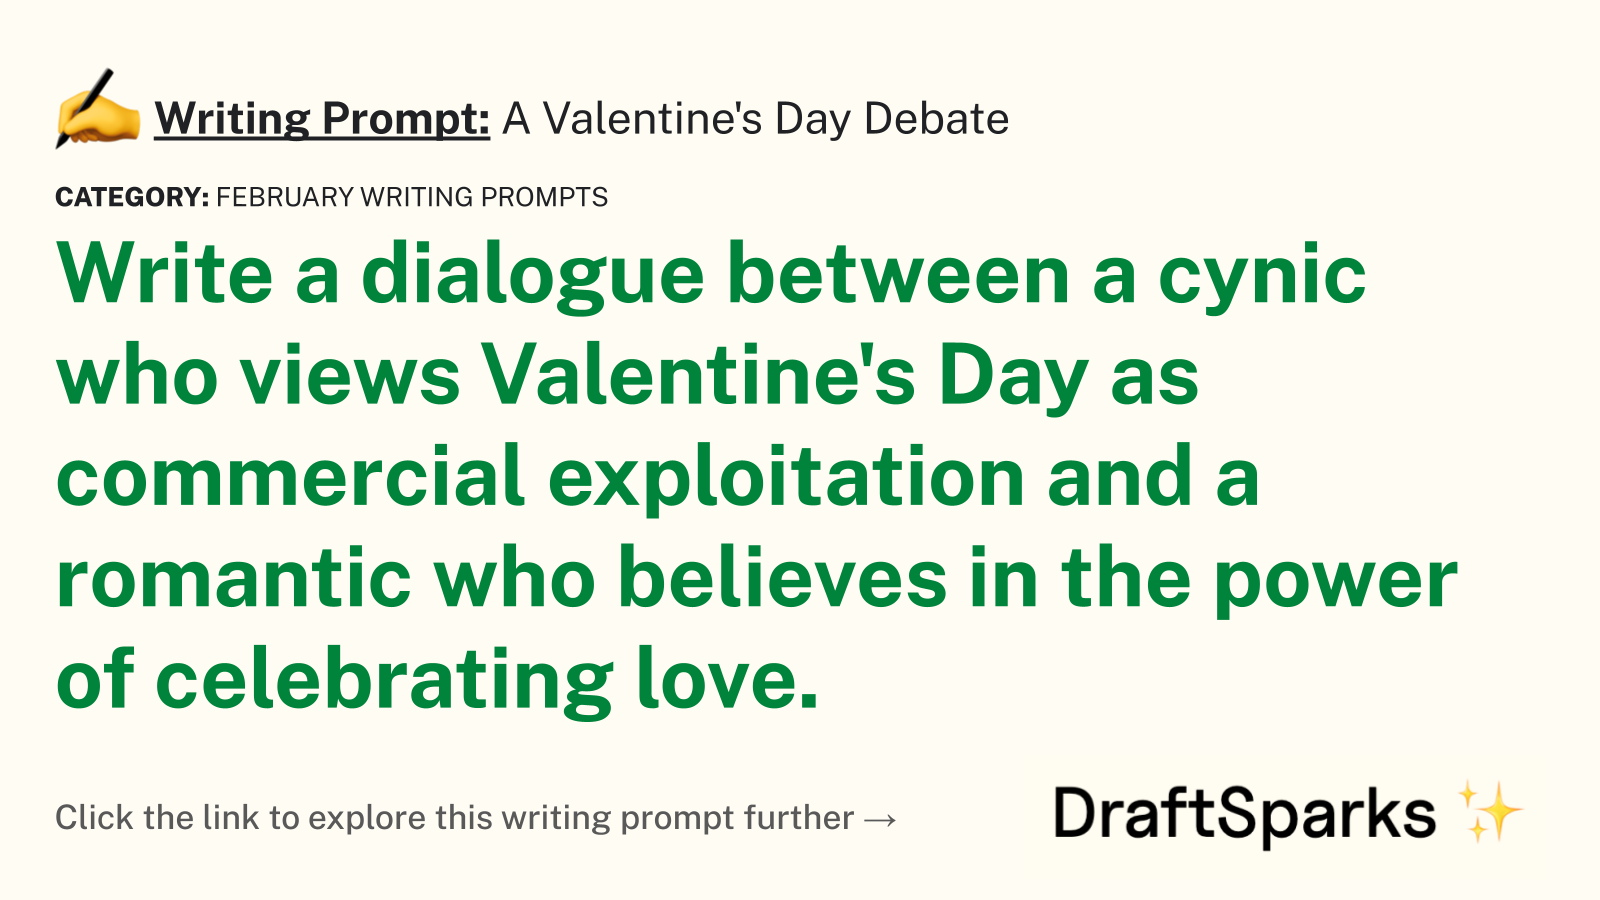 A Valentine’s Day Debate